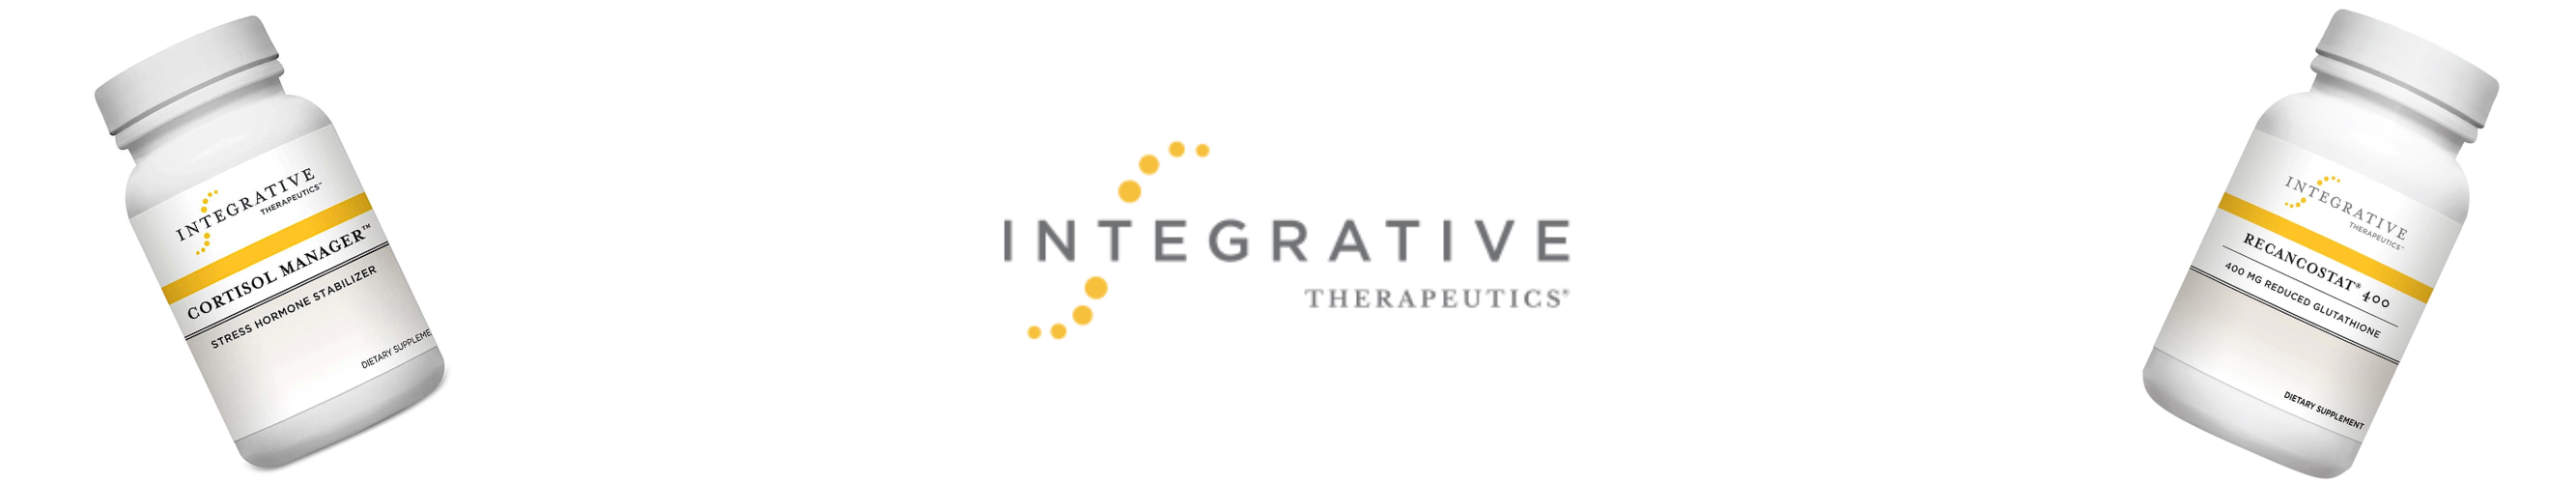 HiLife Vitamins | Integrative Therapeutics